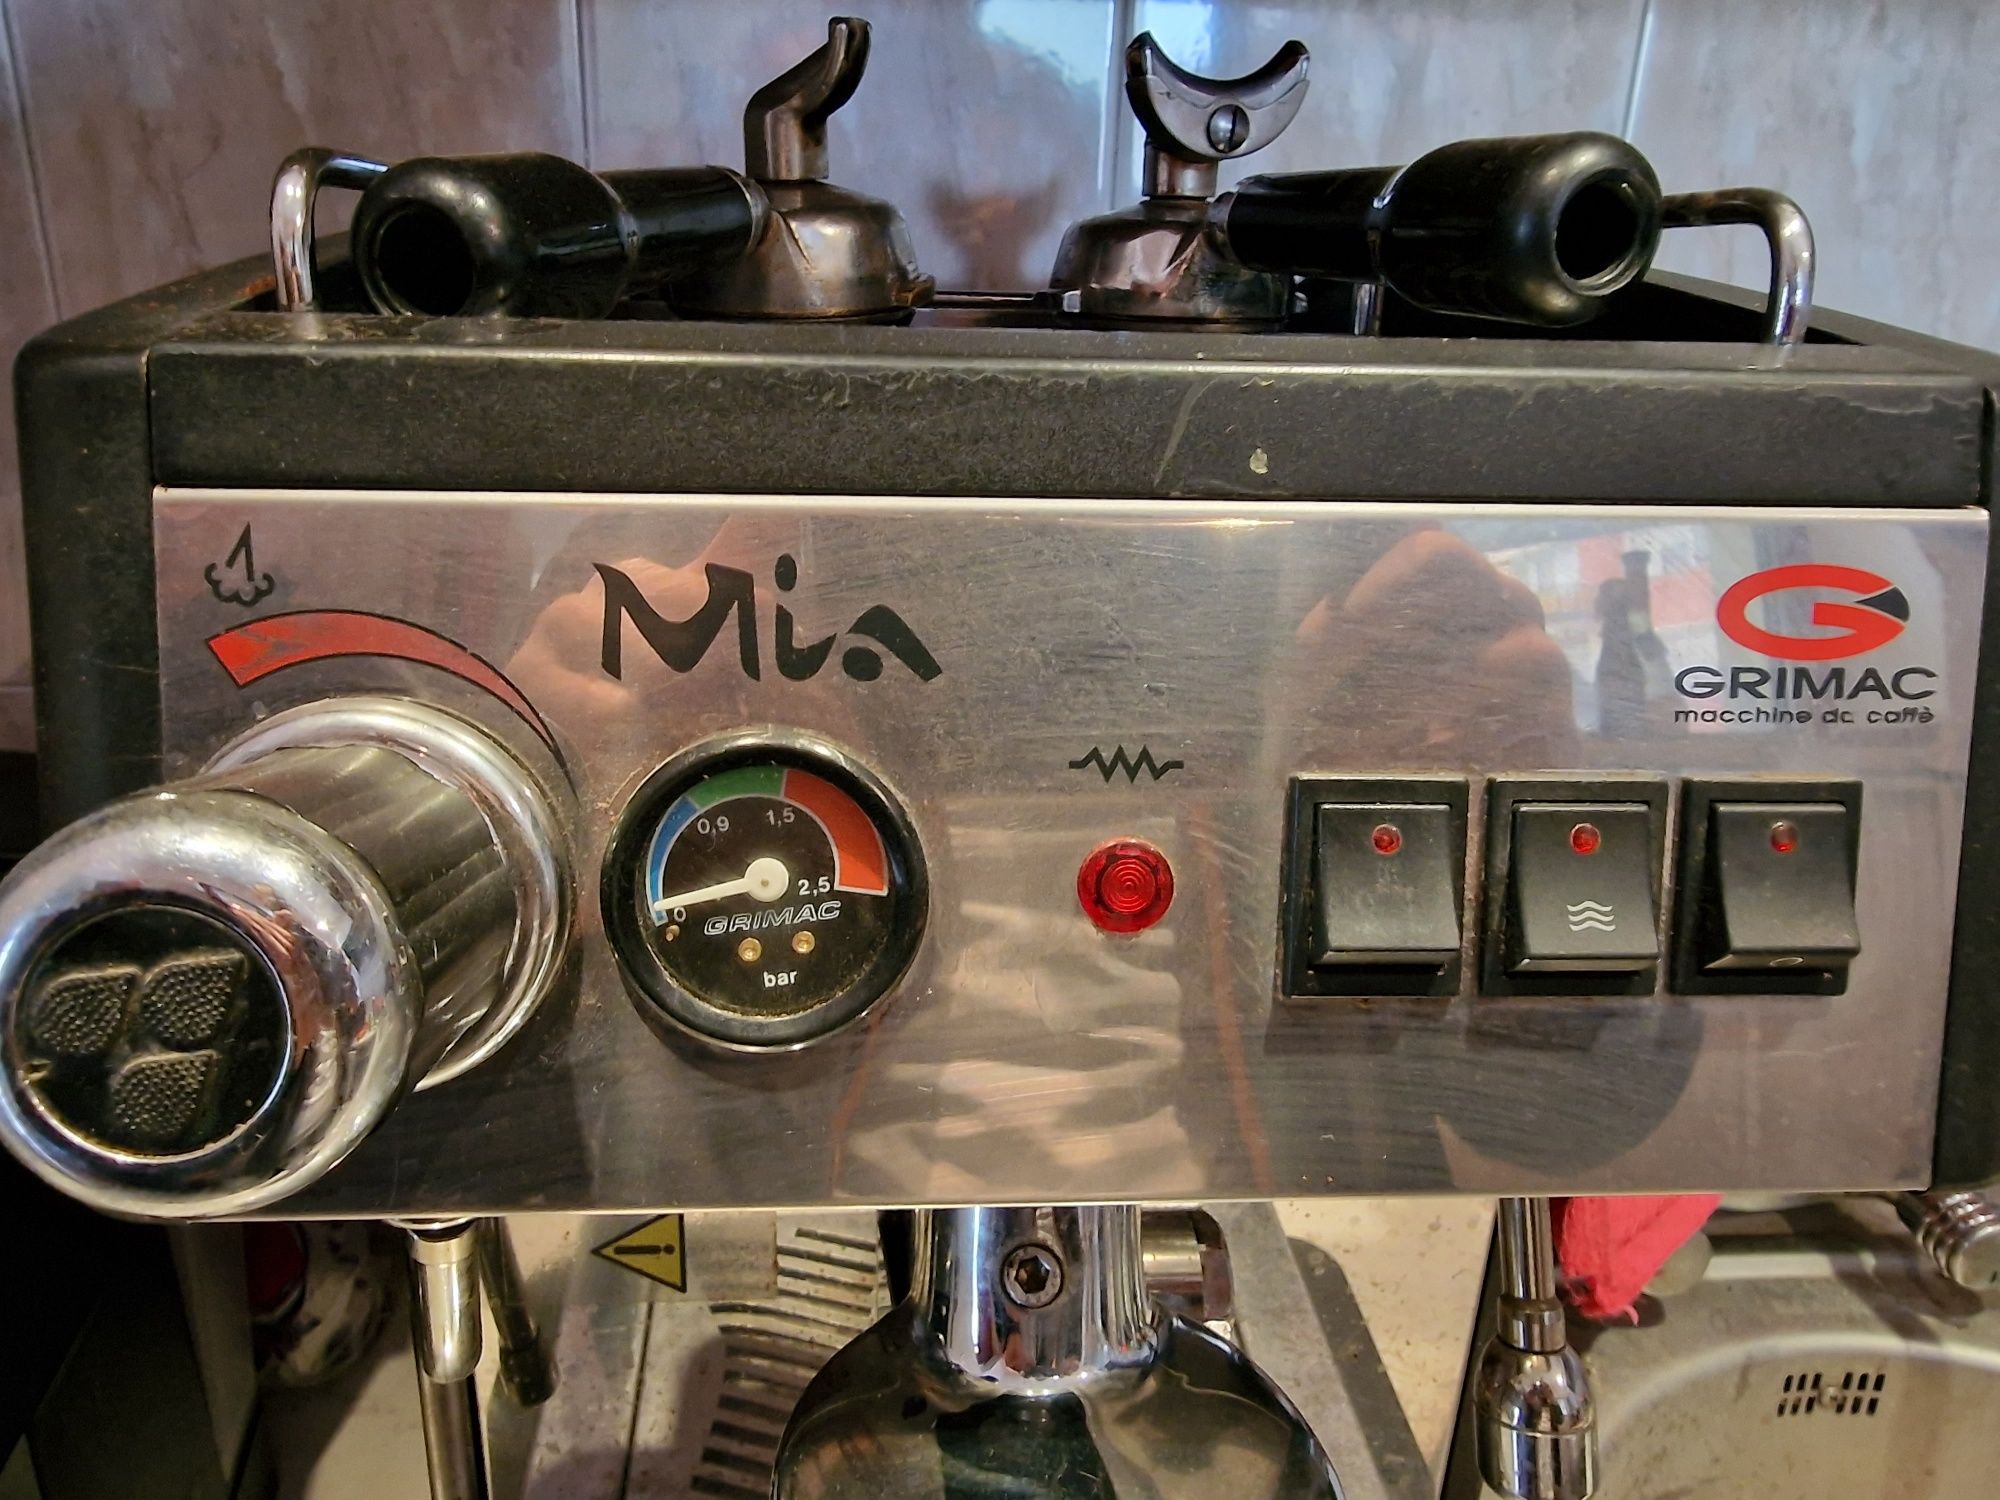 Кафе машина Grimac Mia Ele (Еспресо)